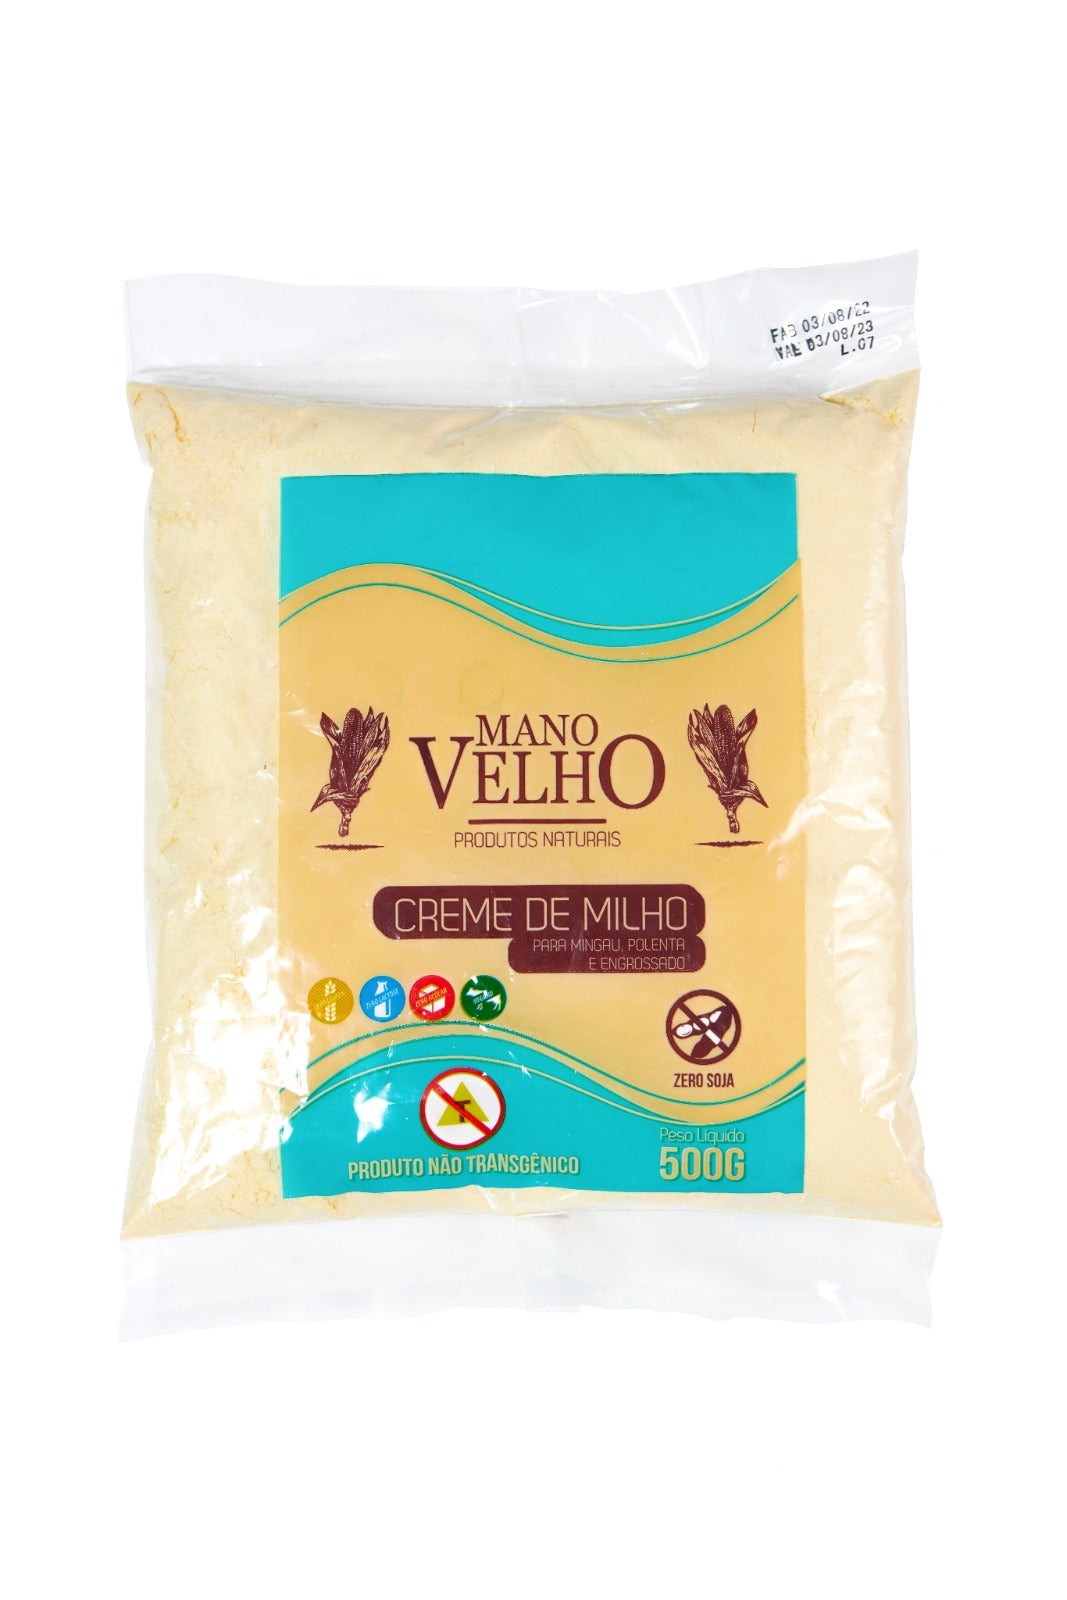 MANO VELHO - Creme de Milho NON-GMO - 500g - OVERSTOCK